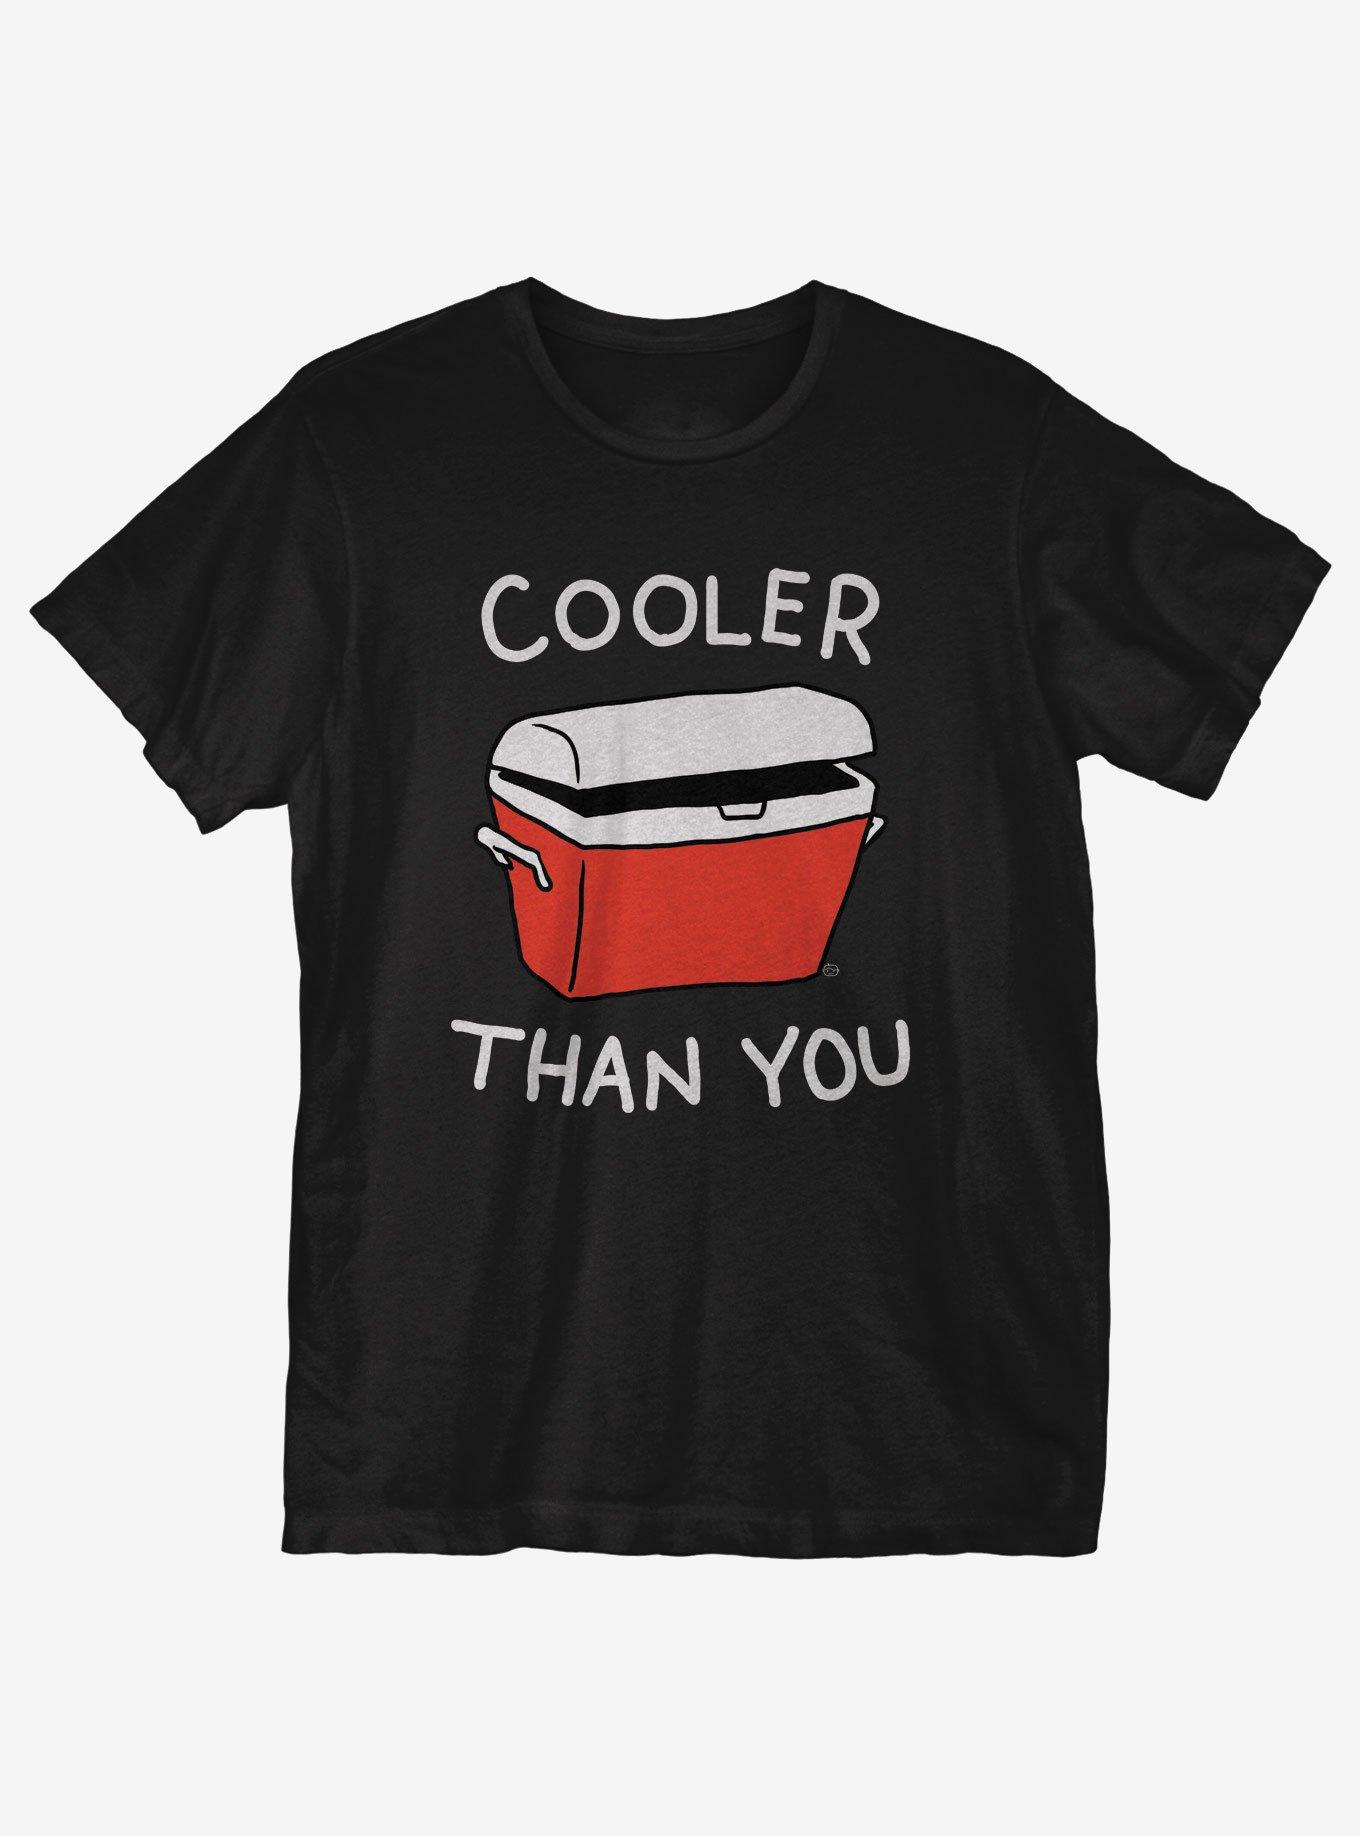 Cooler than You T-Shirt